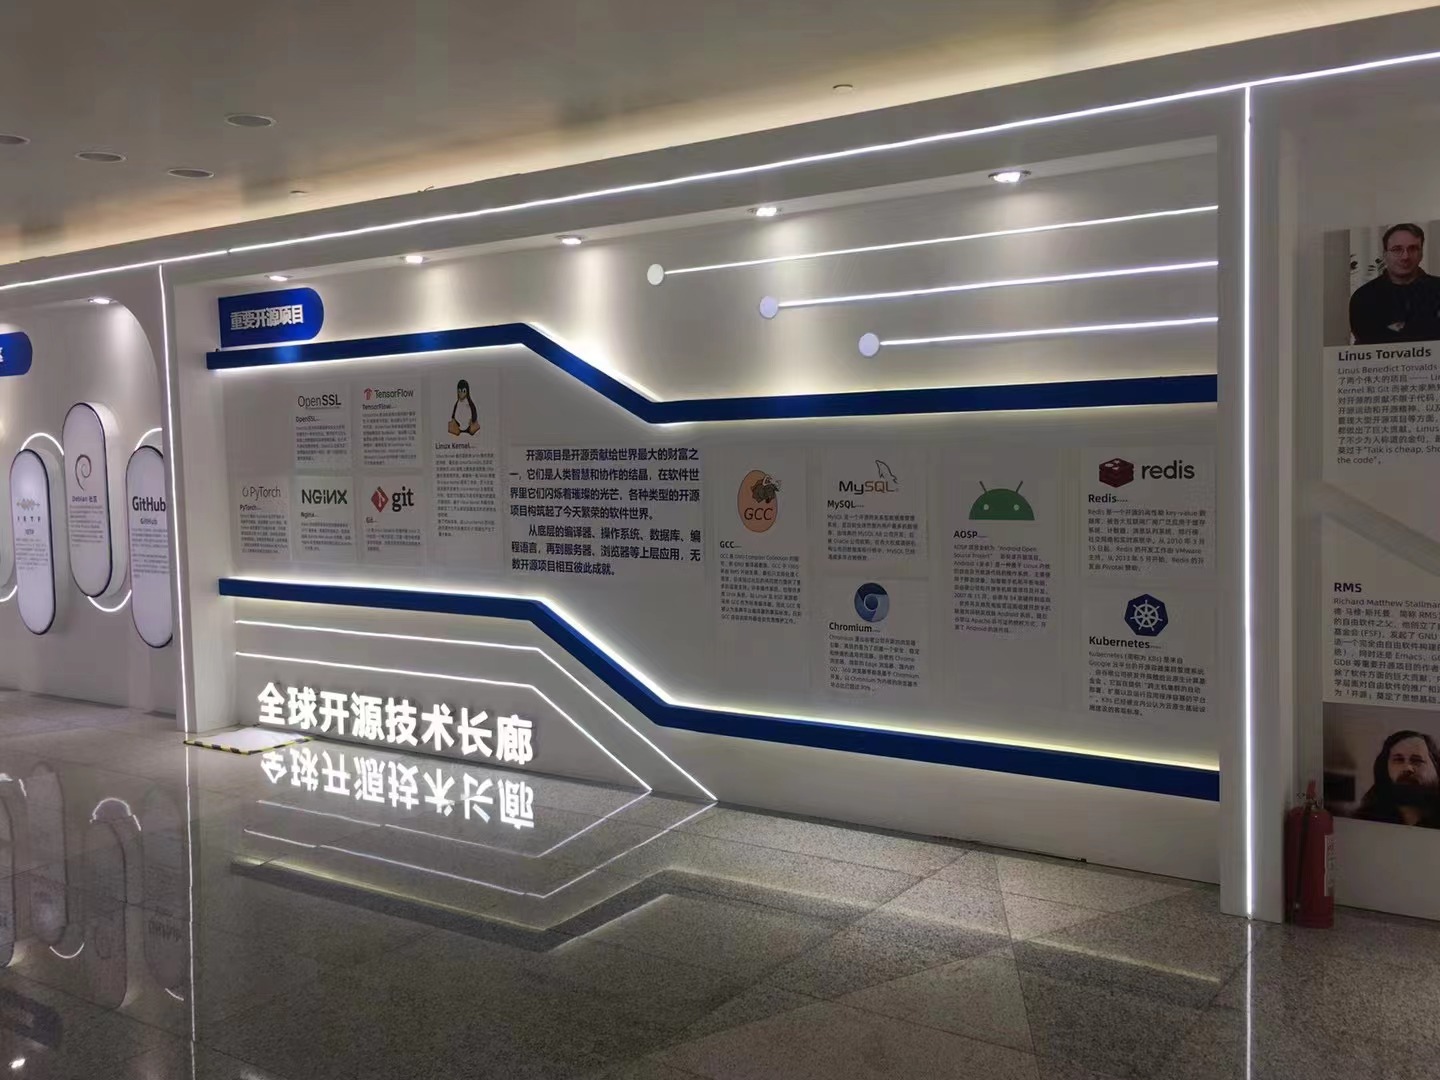 上海开源世界人工智能大会